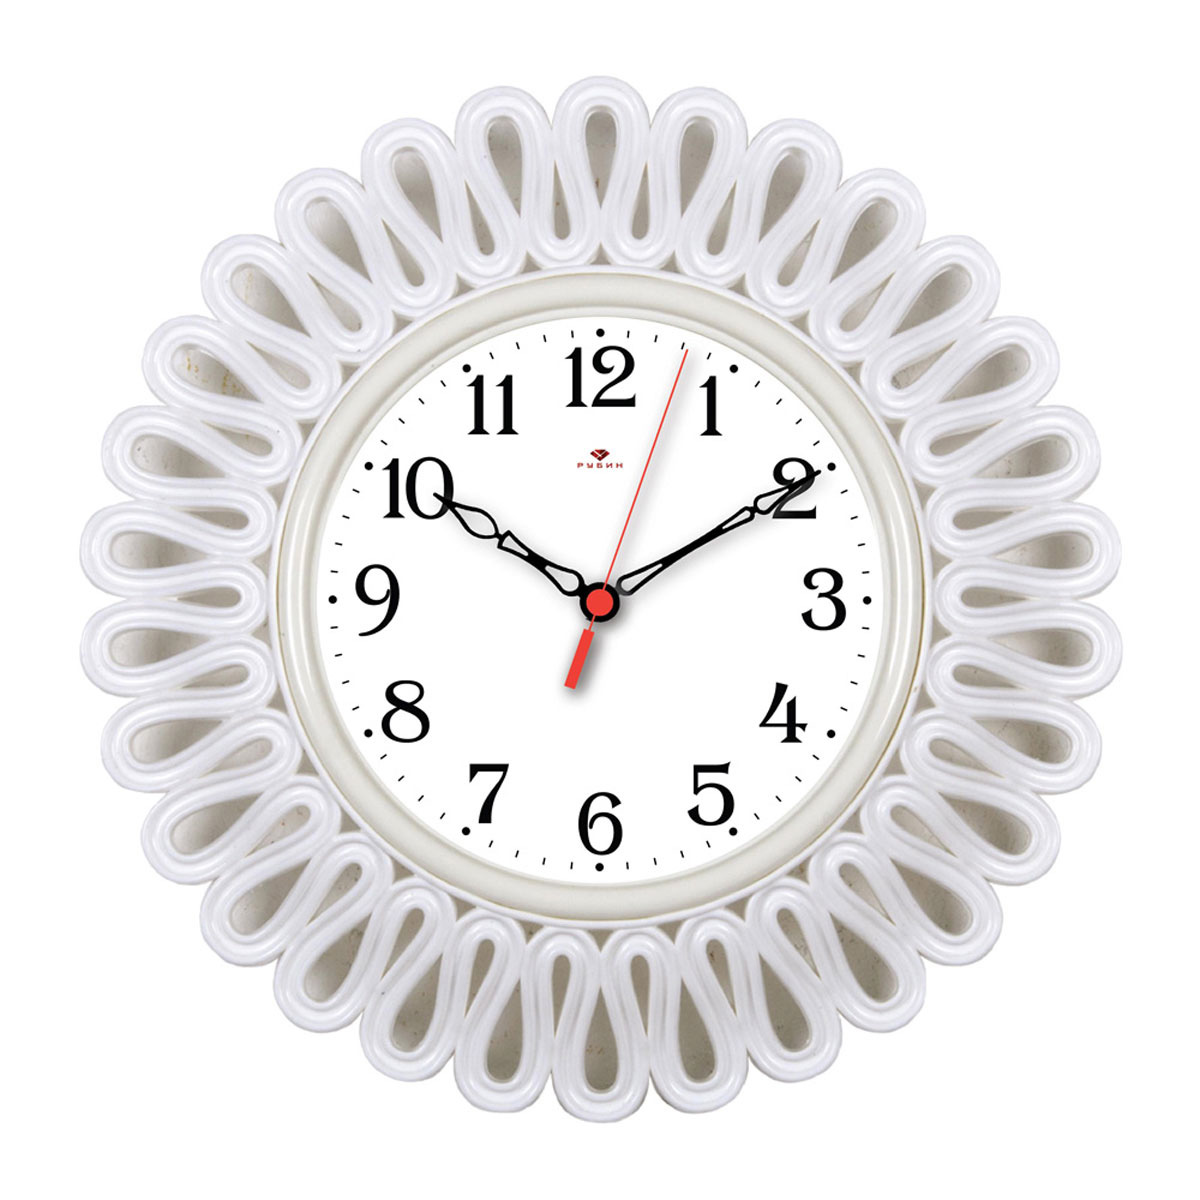 Настенные часы сайты. Часы настенные Рубин 4545-. Настенные часы, белый. Часы настенные большие белые. Часы белые настенные красивые.